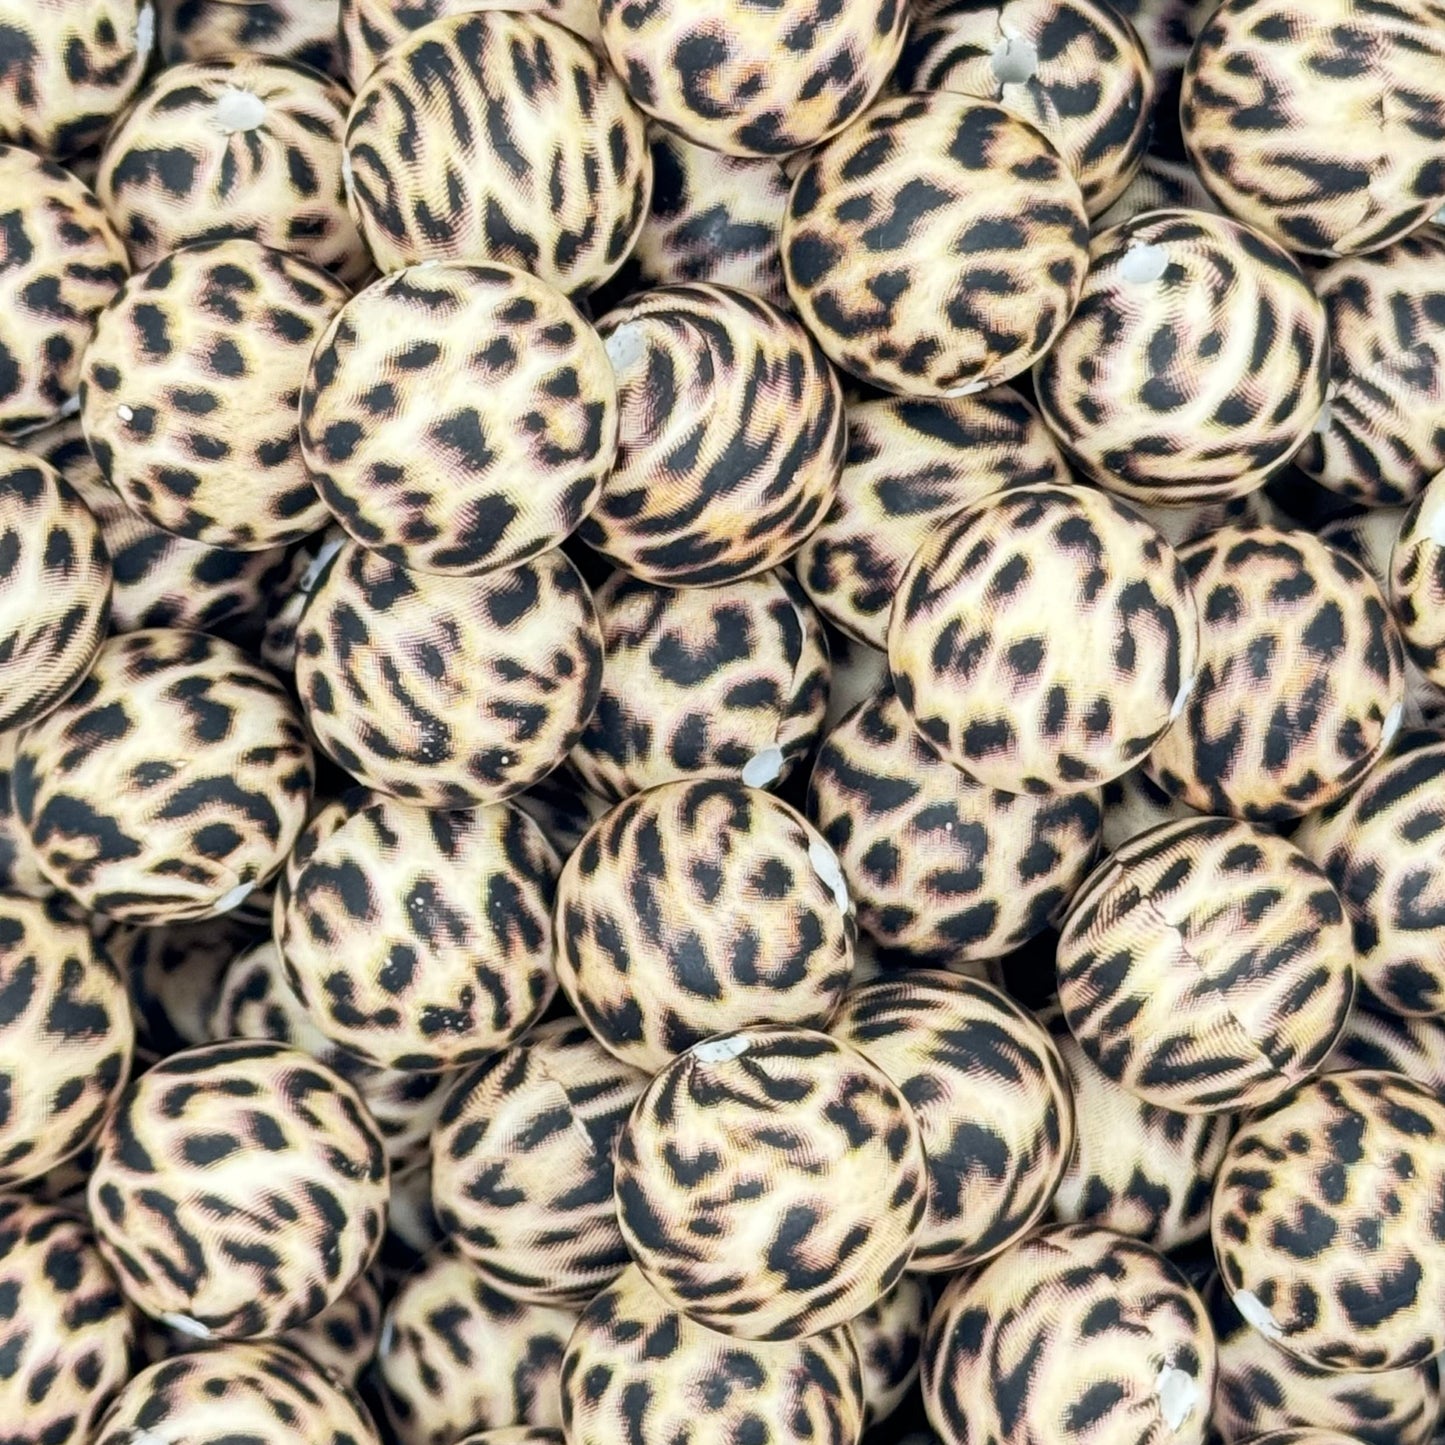 15mm Cheetah Print Silicone Bead